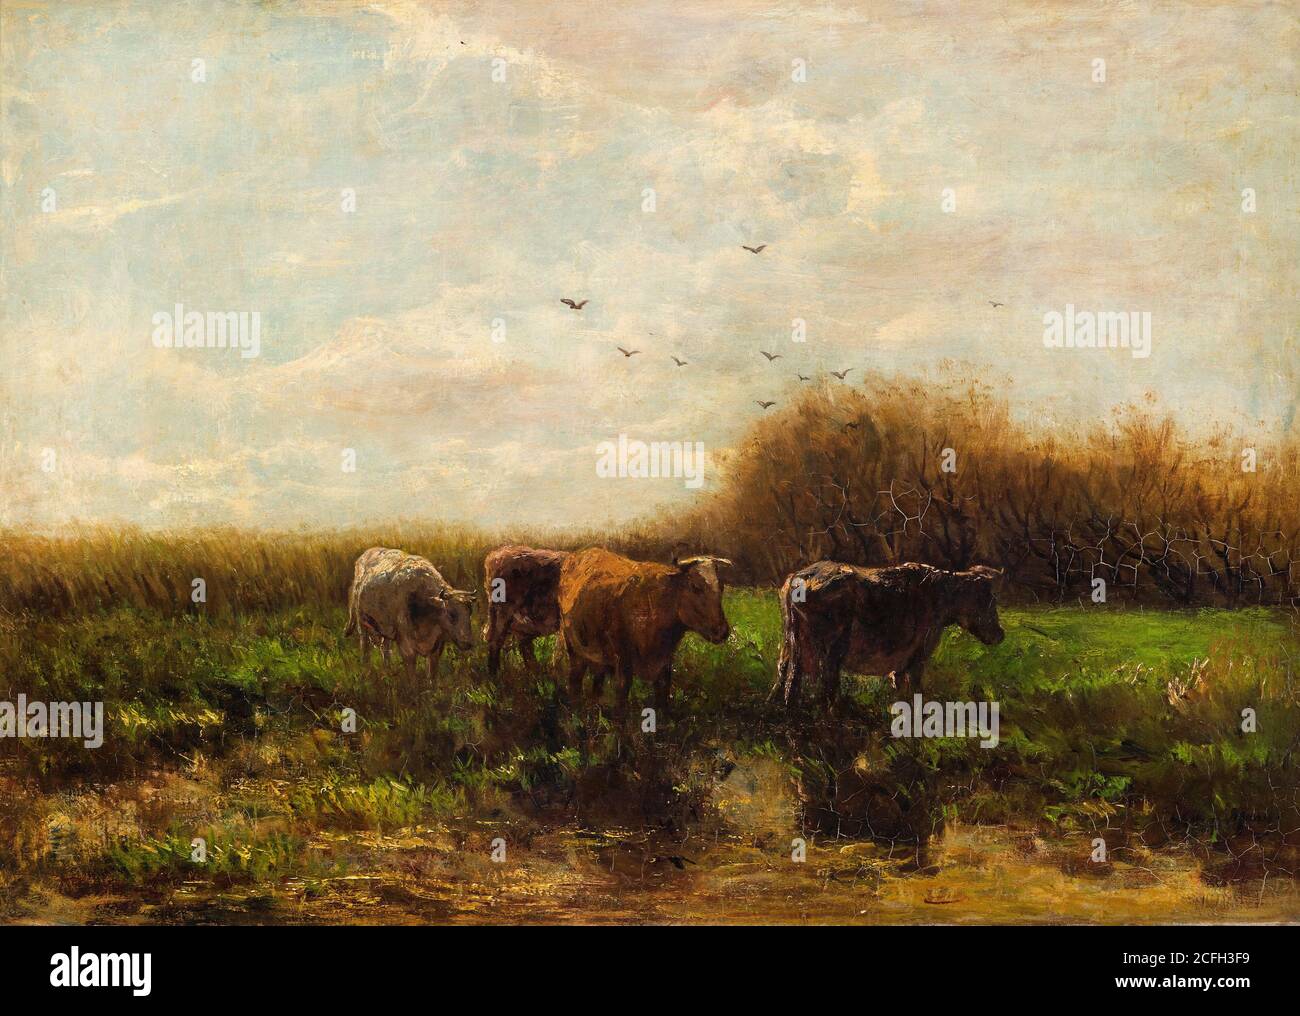 Willem Maris, vacas por la noche, Circa 1859-1910, Óleo sobre lienzo, Gemeentemuseum Den Haag, la haya, países Bajos. Foto de stock